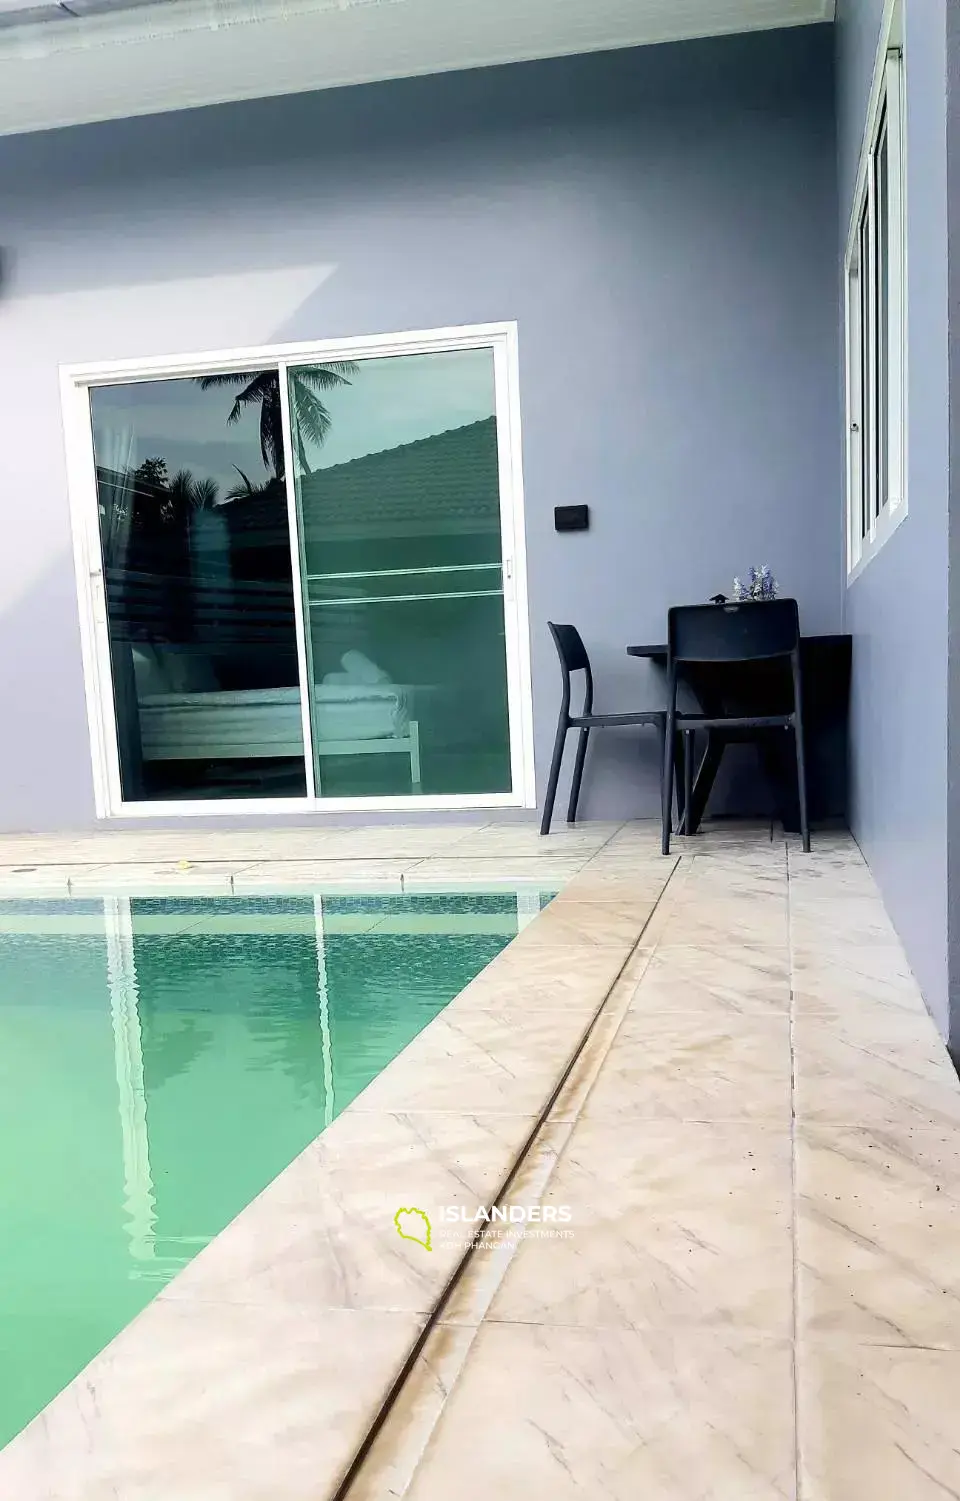 3 Bedrooms Pool Villa in Maenam for Rent